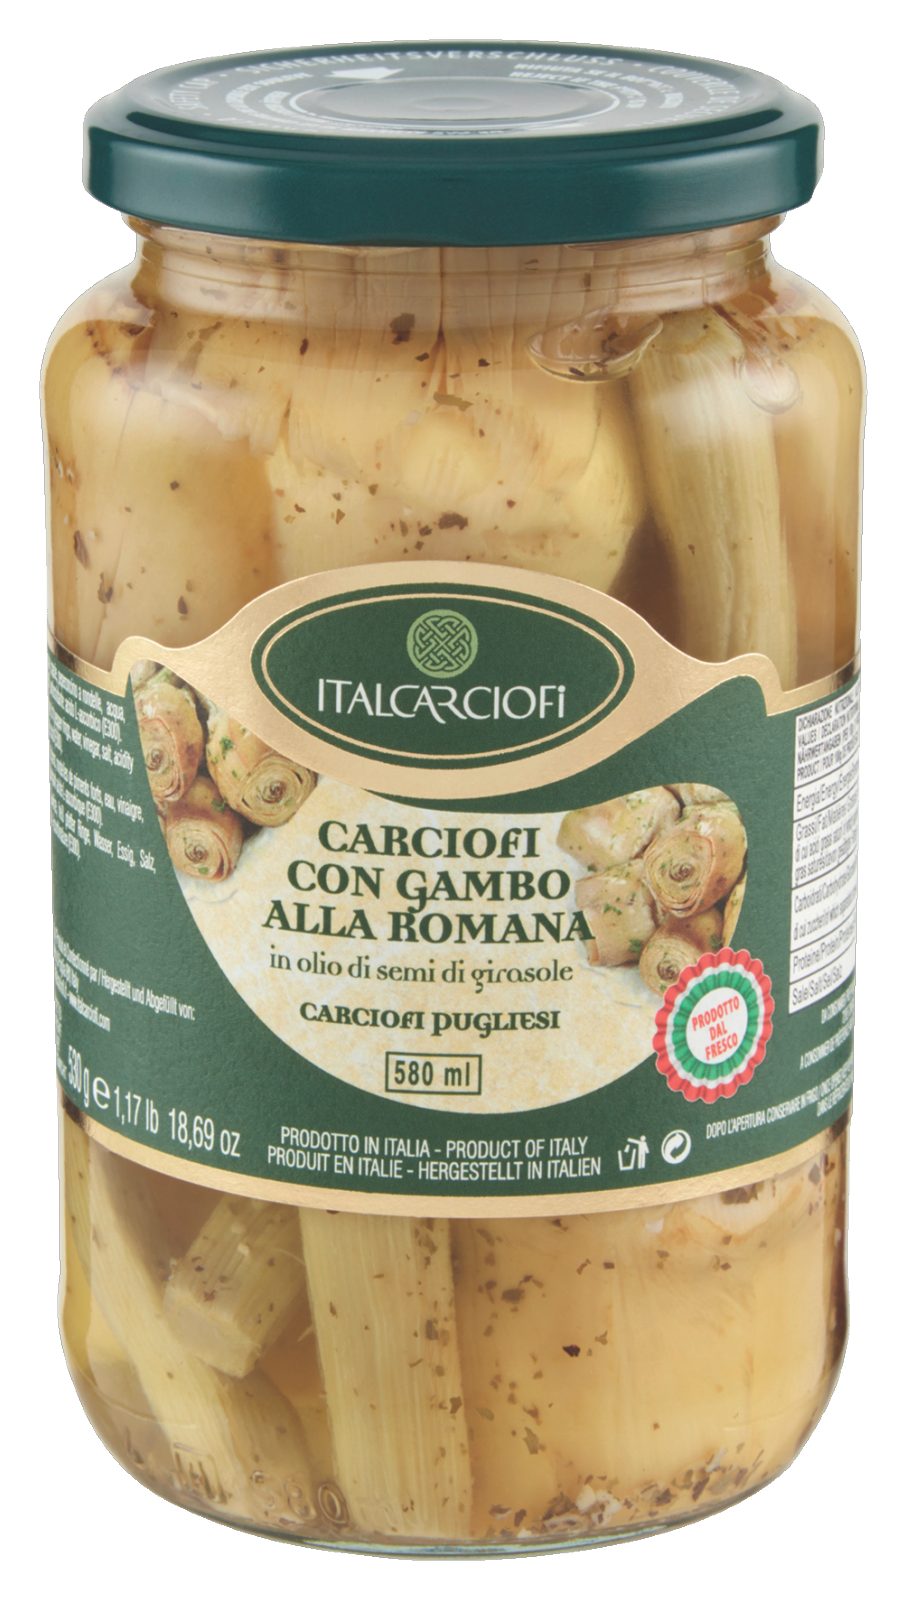 Carciofi di Puglia con gambo in olio di girasole Italcarciofi